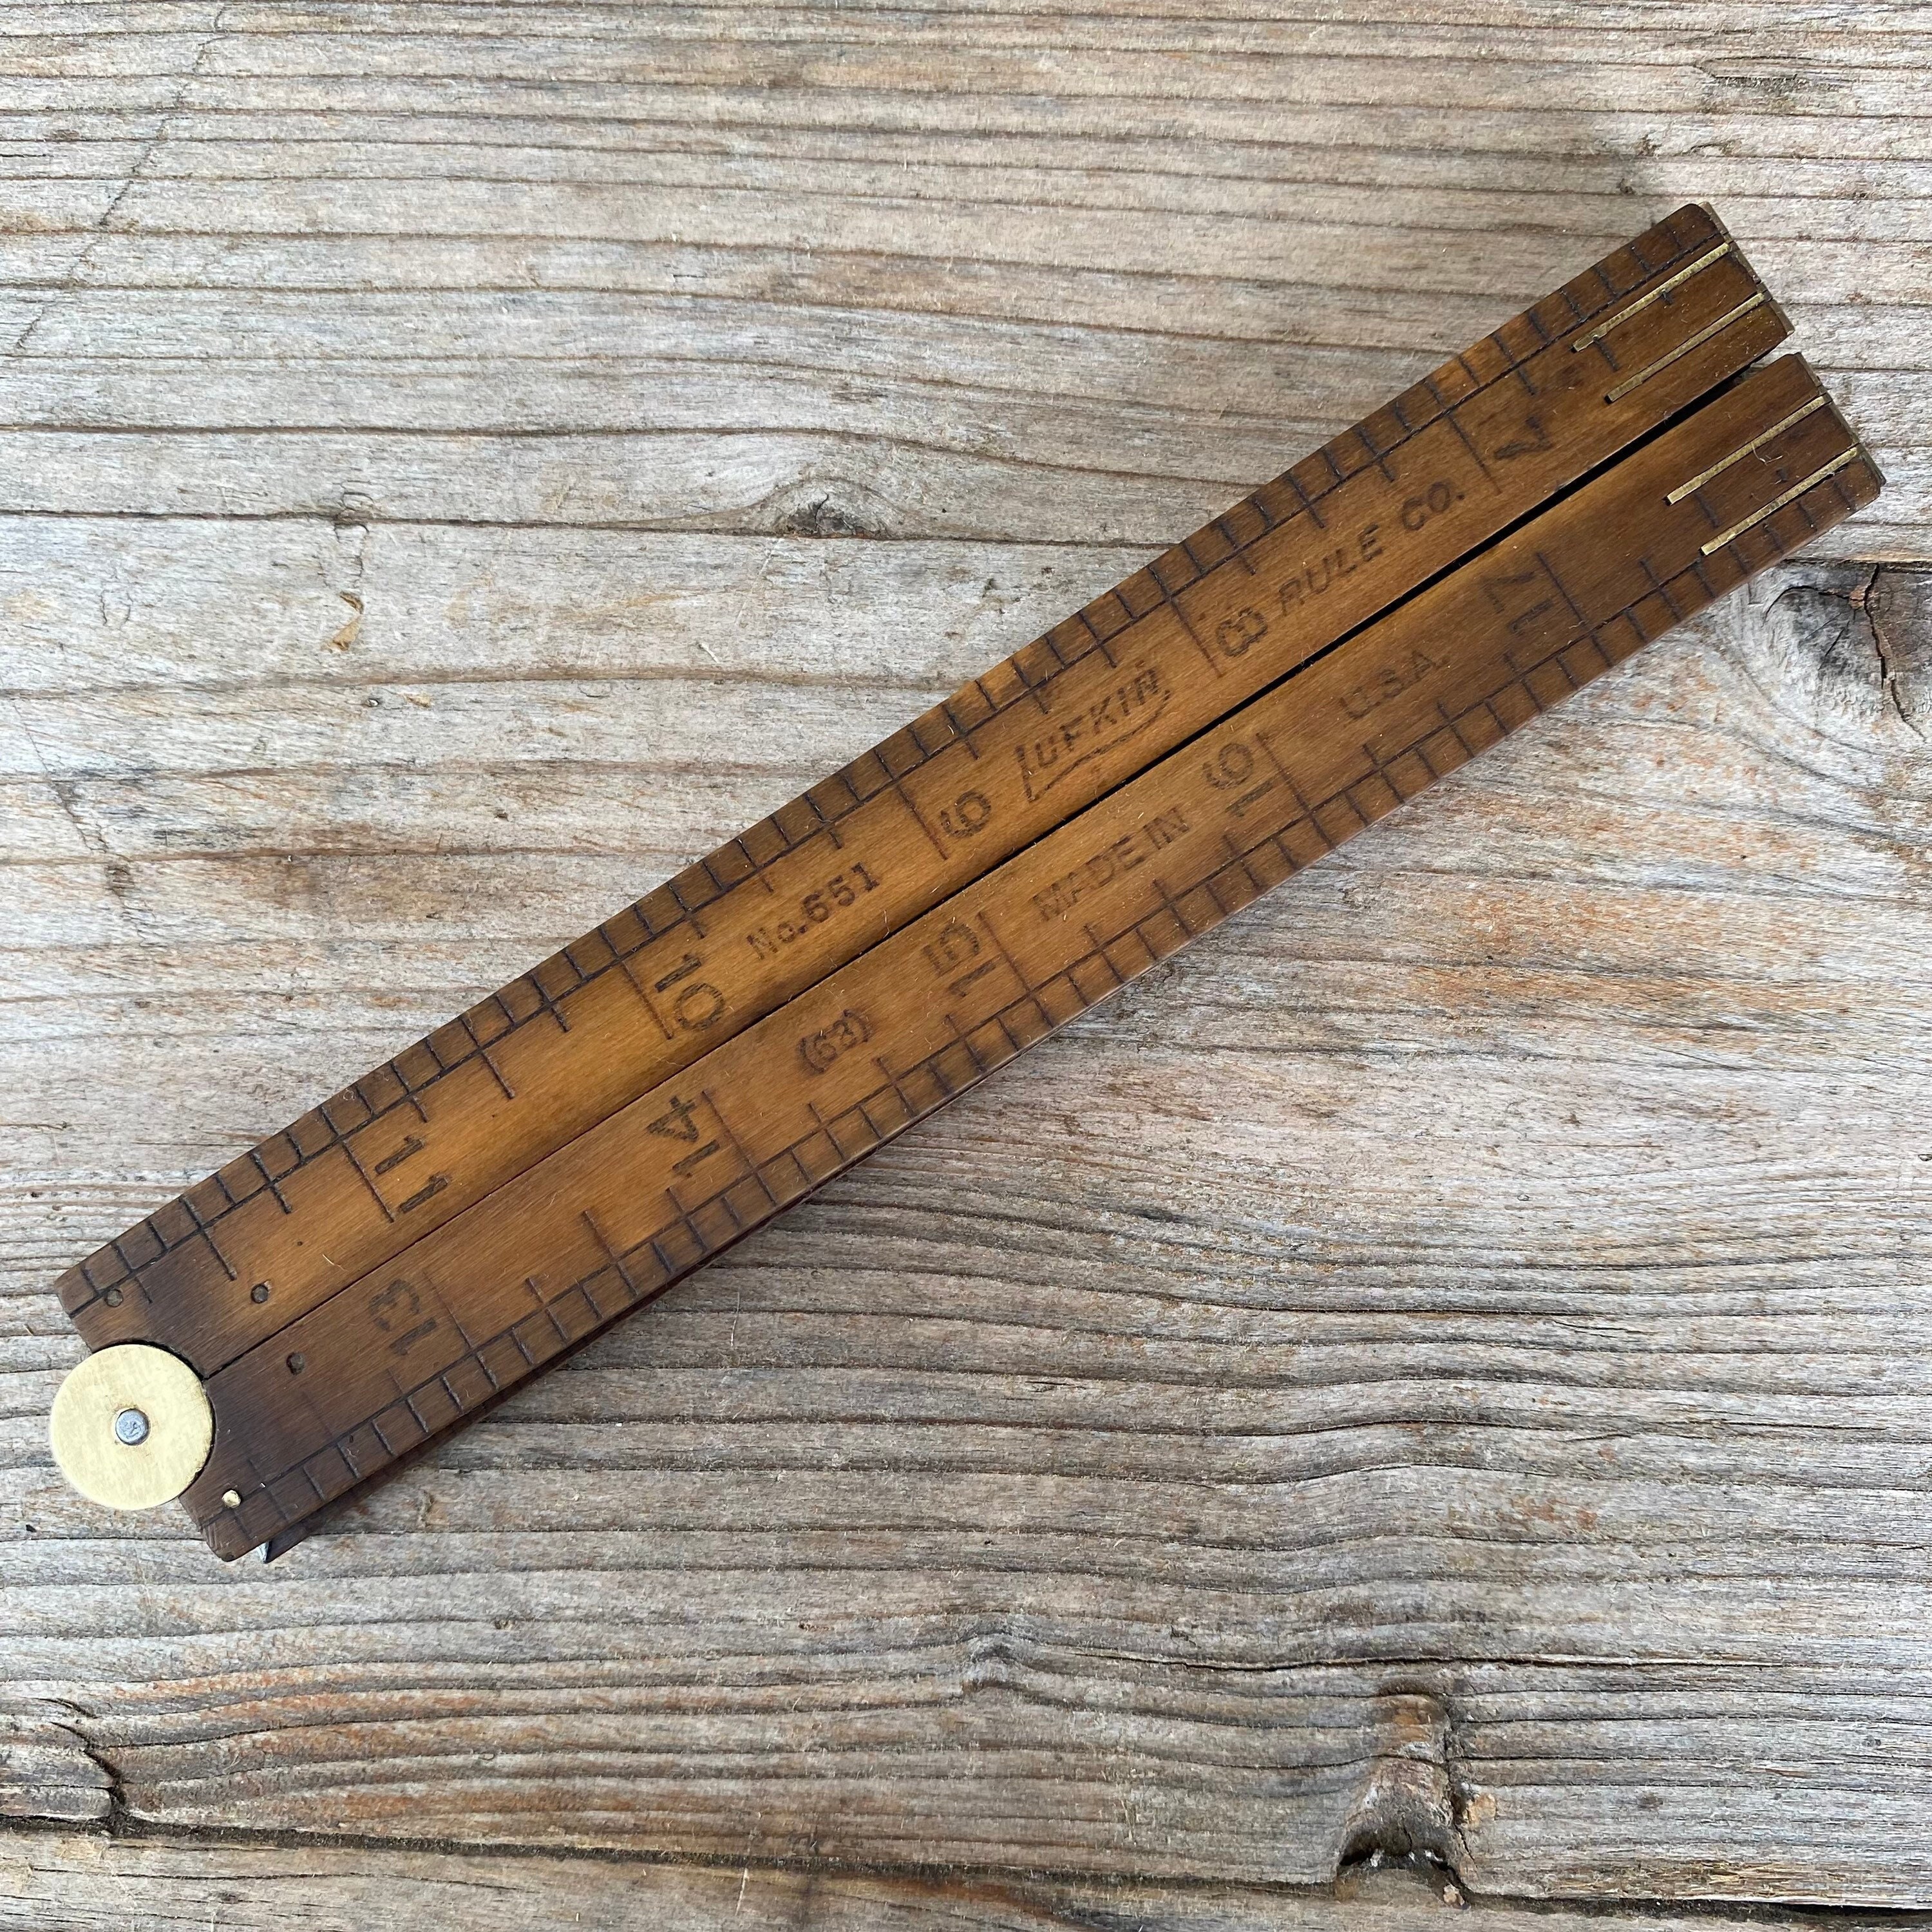 Midori Aluminium and Wood Ruler 15cm